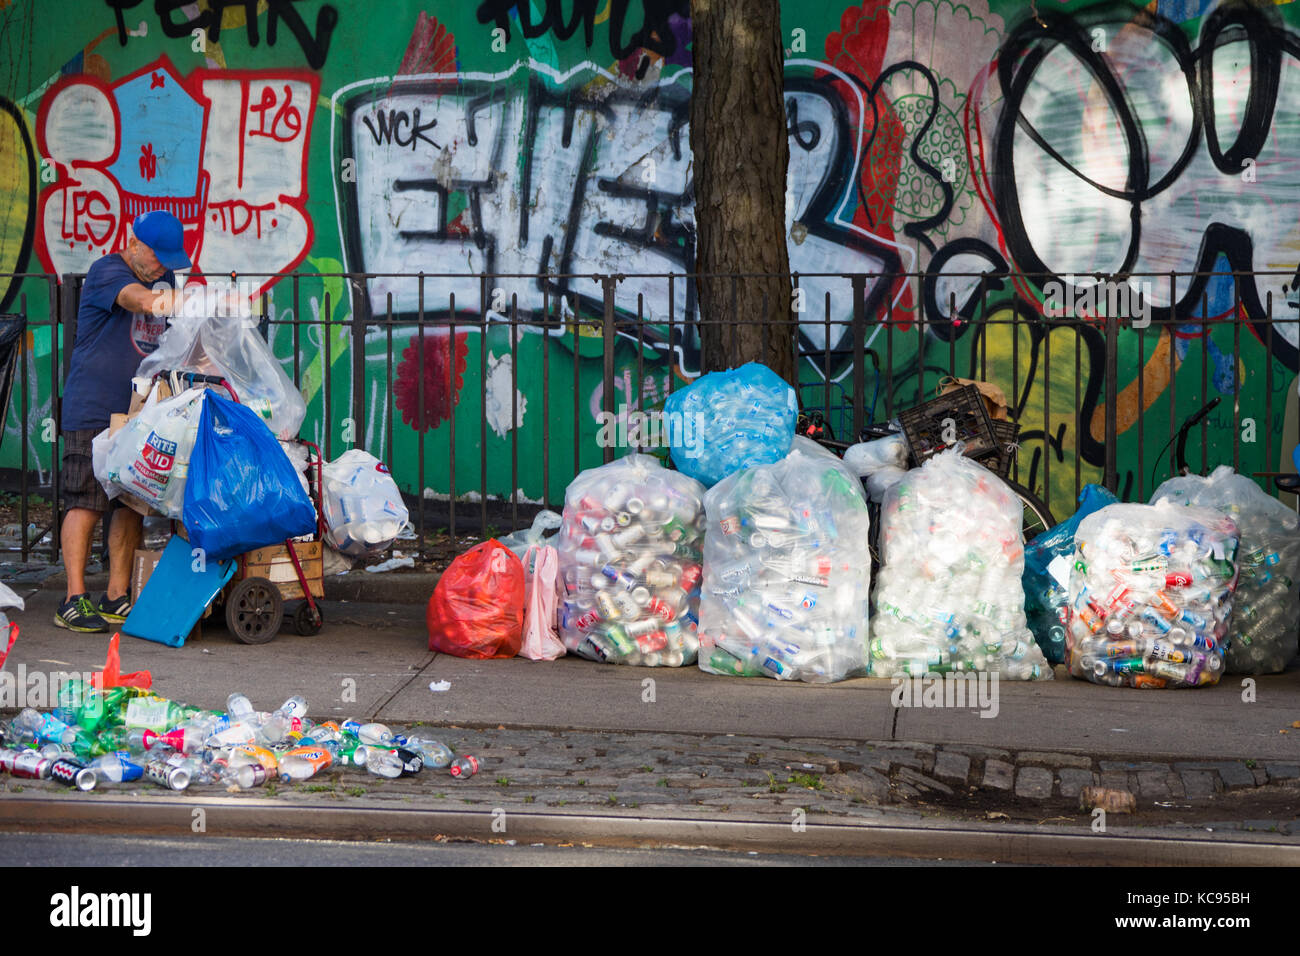 La collecte des ramasseurs de matériaux recyclés, Chinatown, New York City, USA Banque D'Images